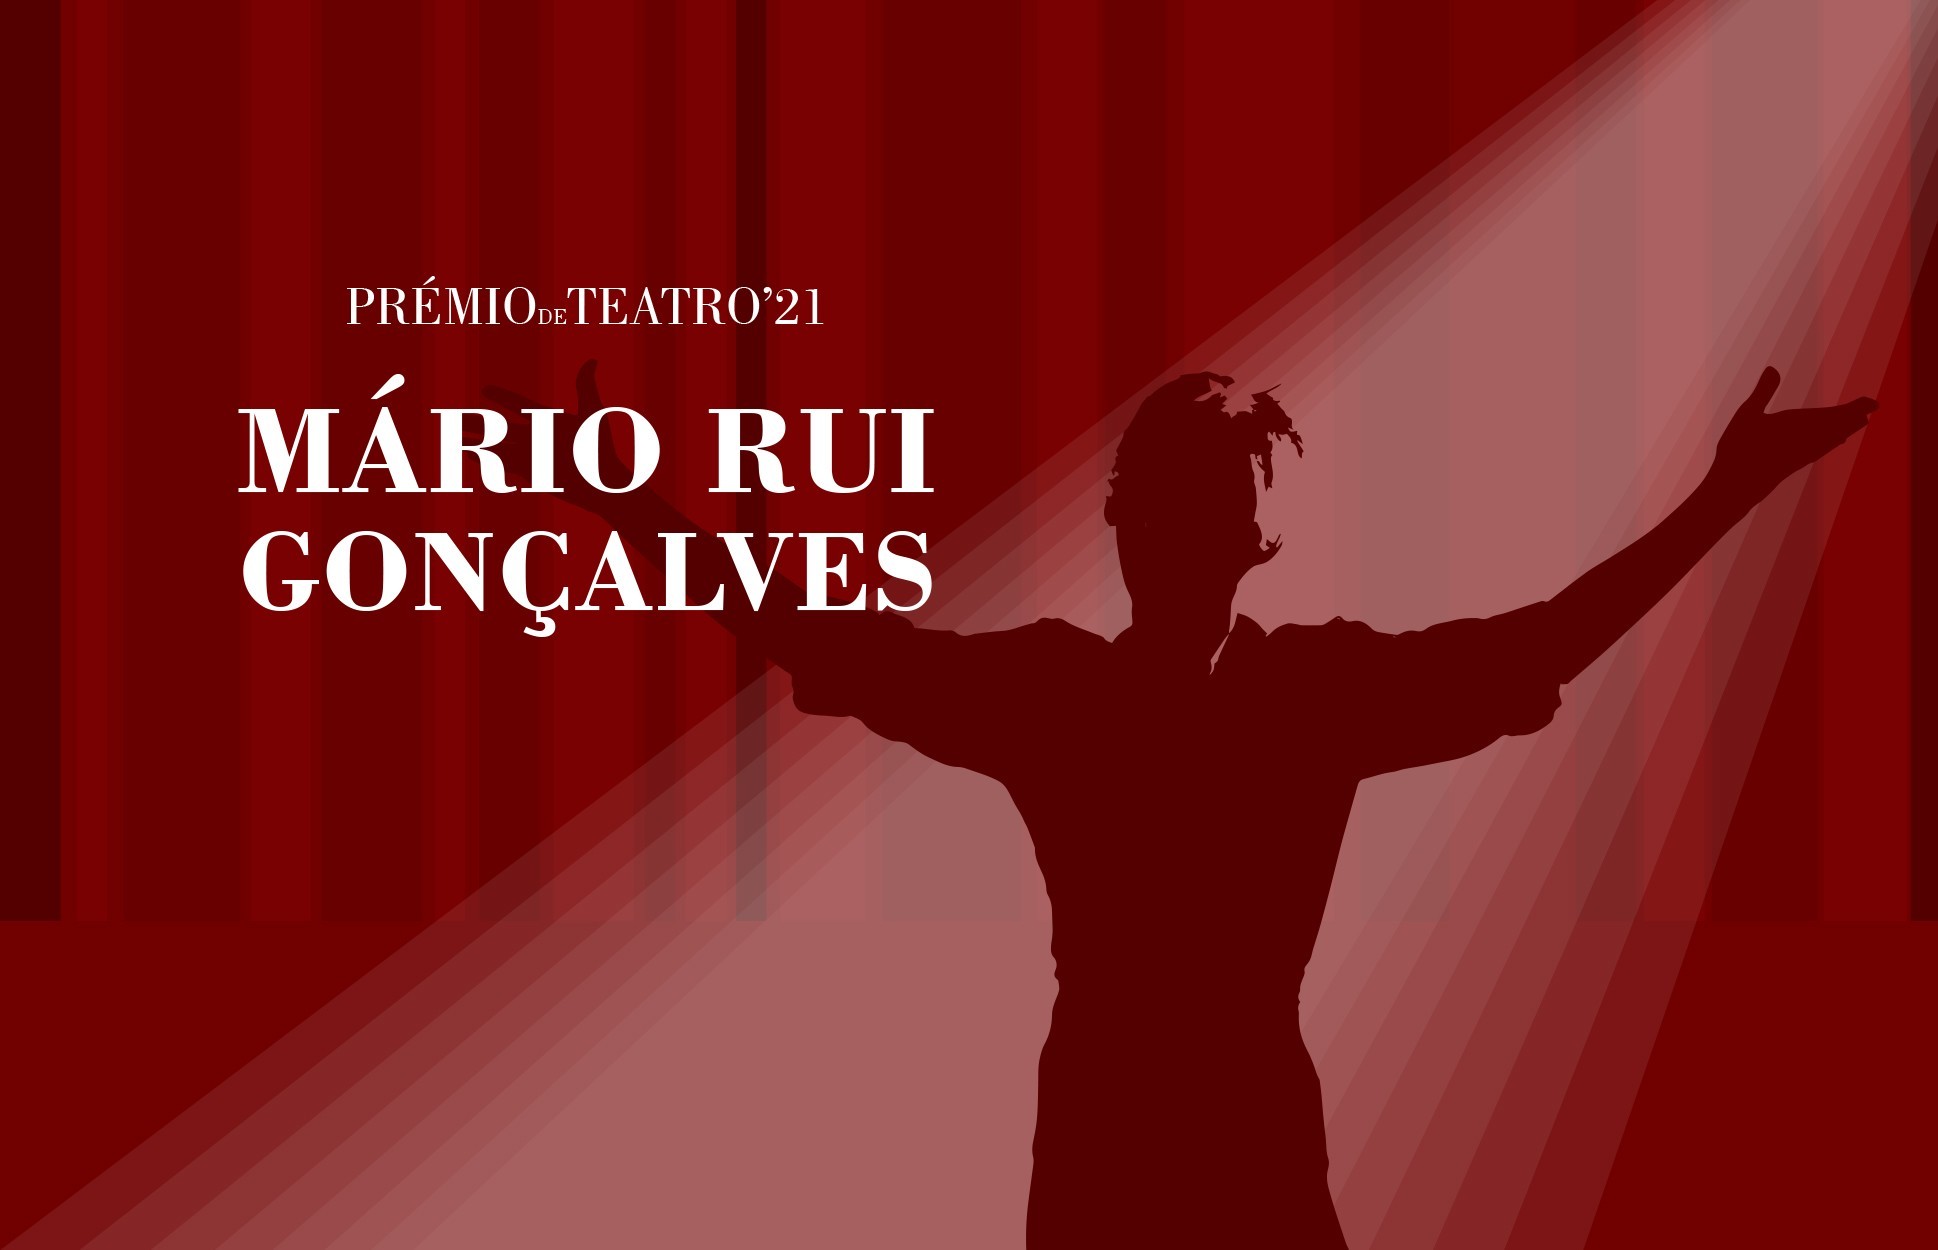 Prémio de Teatro Mário Rui Gonçalves – inscrições terminam amanhã